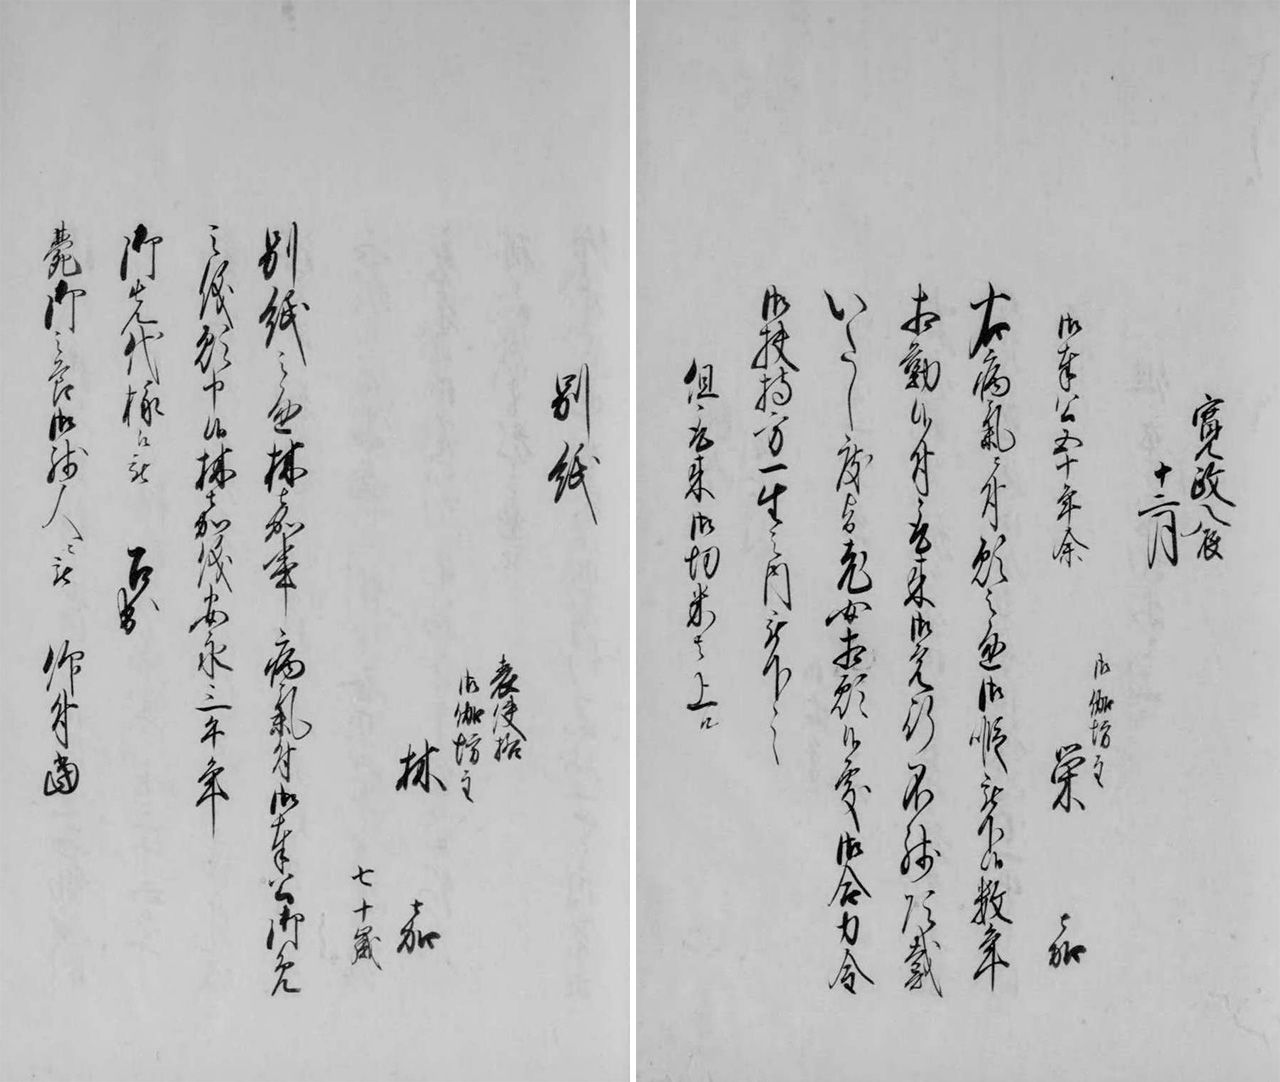 En una lista de sirvientes de 1805 a 1810 aparecen nombres y edades de algunas otogibōzu. La página izquierda registra una ayudante de 70 años, y la derecha una que “lleva sirviendo cincuenta años”, lo que indica que ambas eran de edad avanzada. (Cortesía de los Archivos Nacionales de Japón)